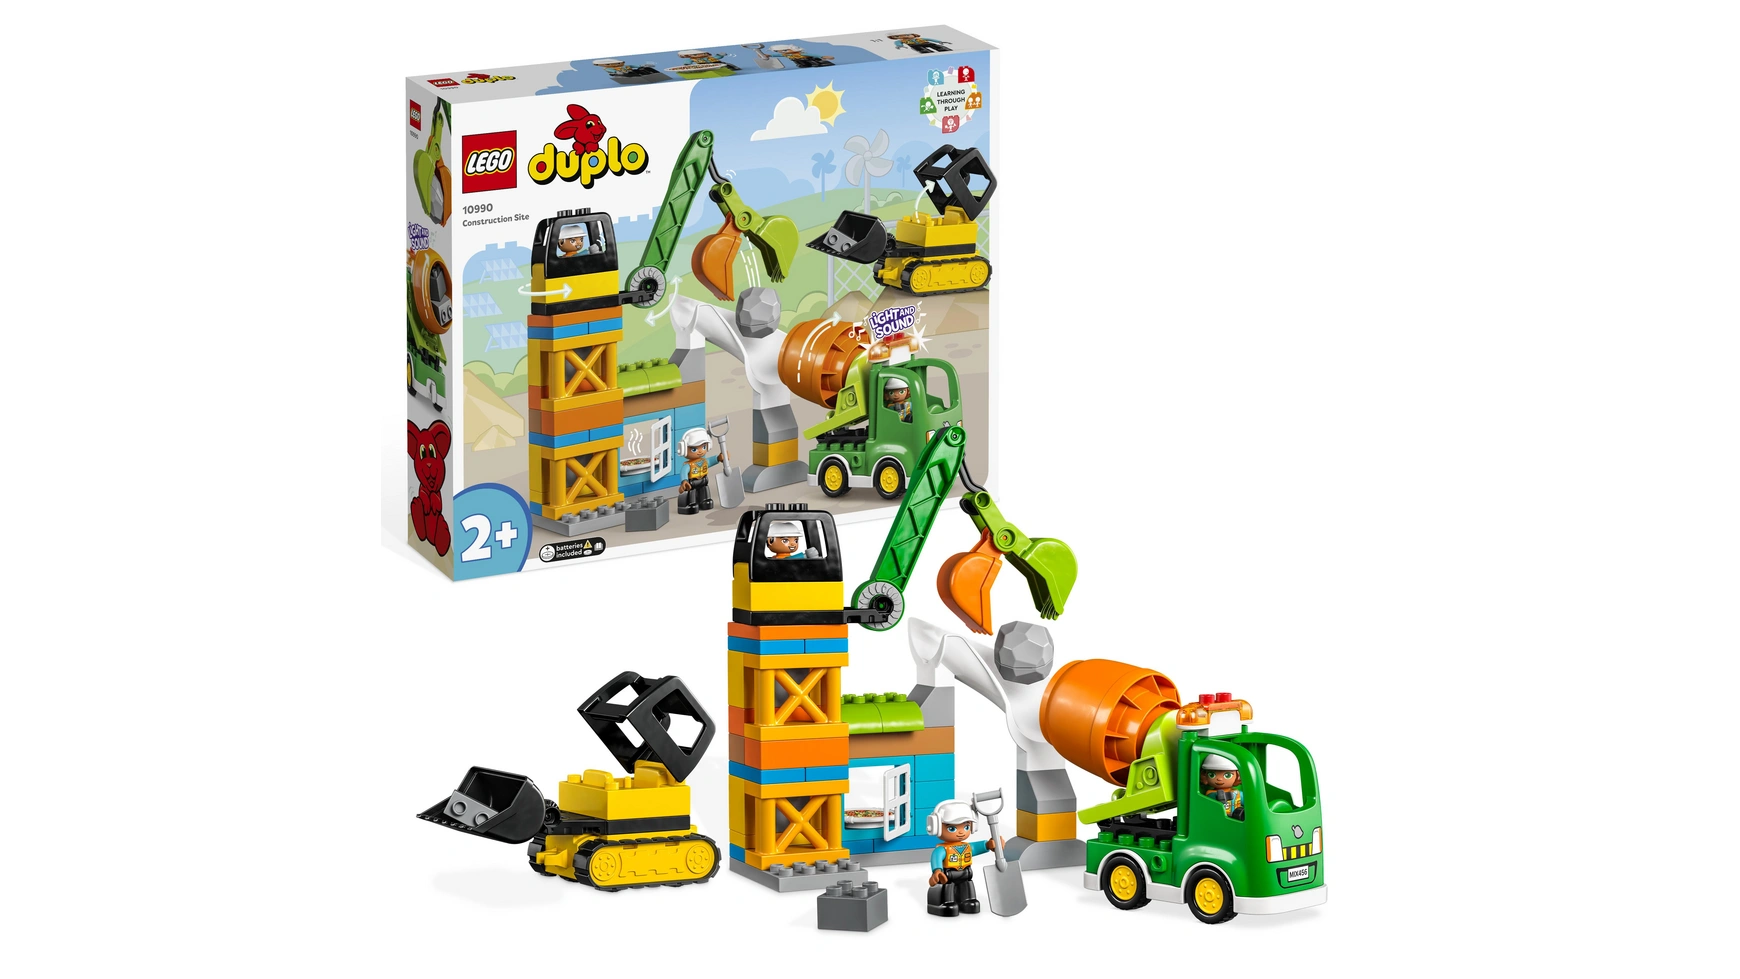 Lego DUPLO Строительная площадка со строительной техникой, игрушка для малышей lego duplo town обучающая игрушка грузовик abc с игрушечным грузовиком